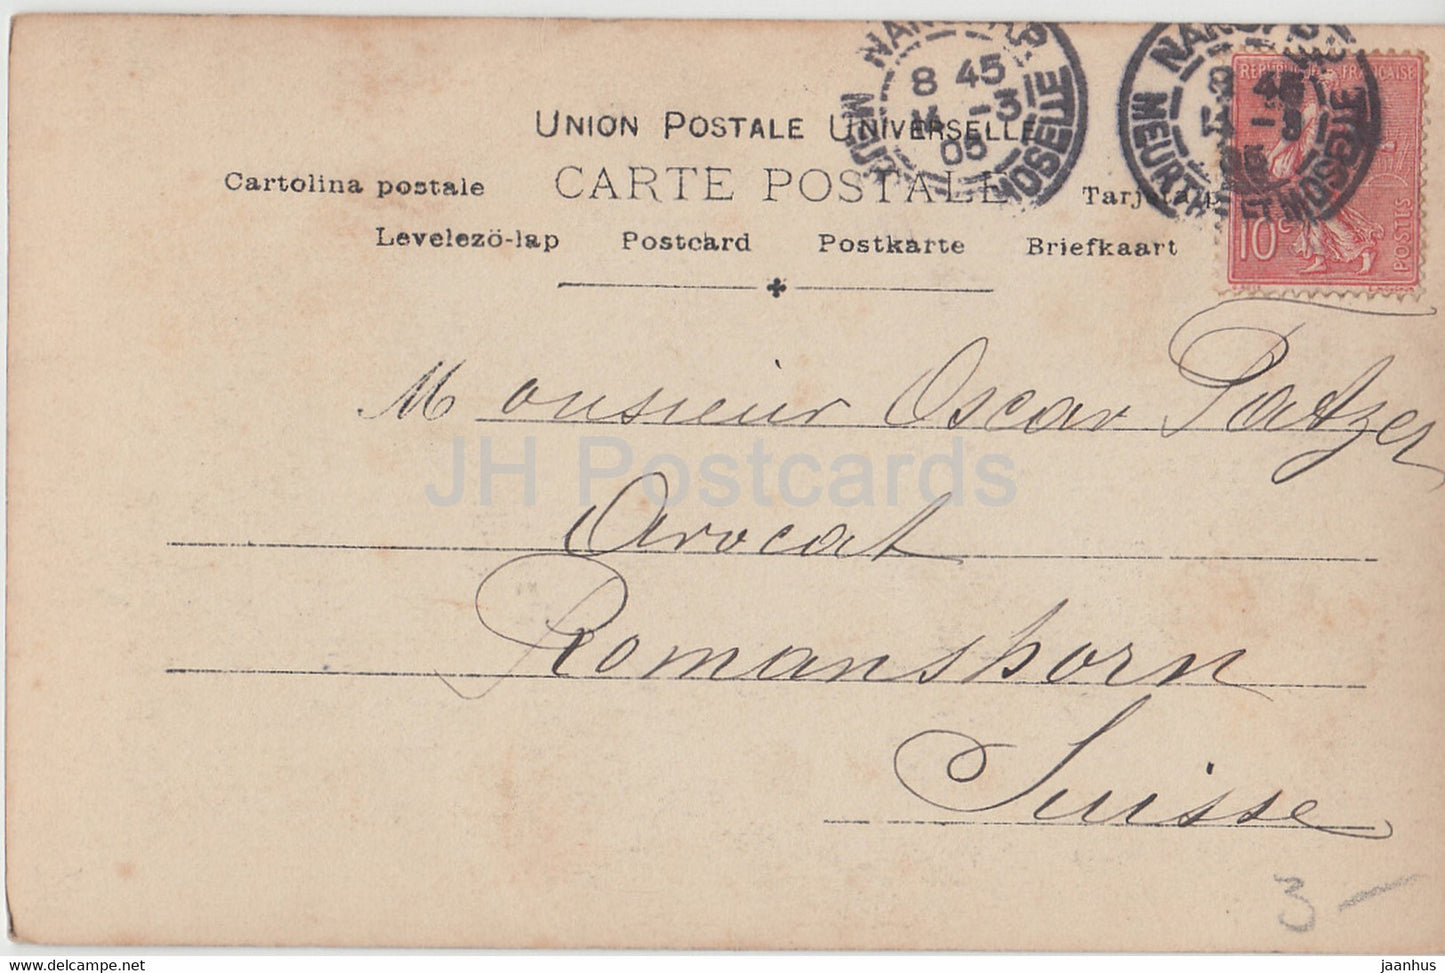 French dancer and Vedette Liane de Pougy - woman - ETE - Reutlinger Paris - old postcard - 1905 - France - used